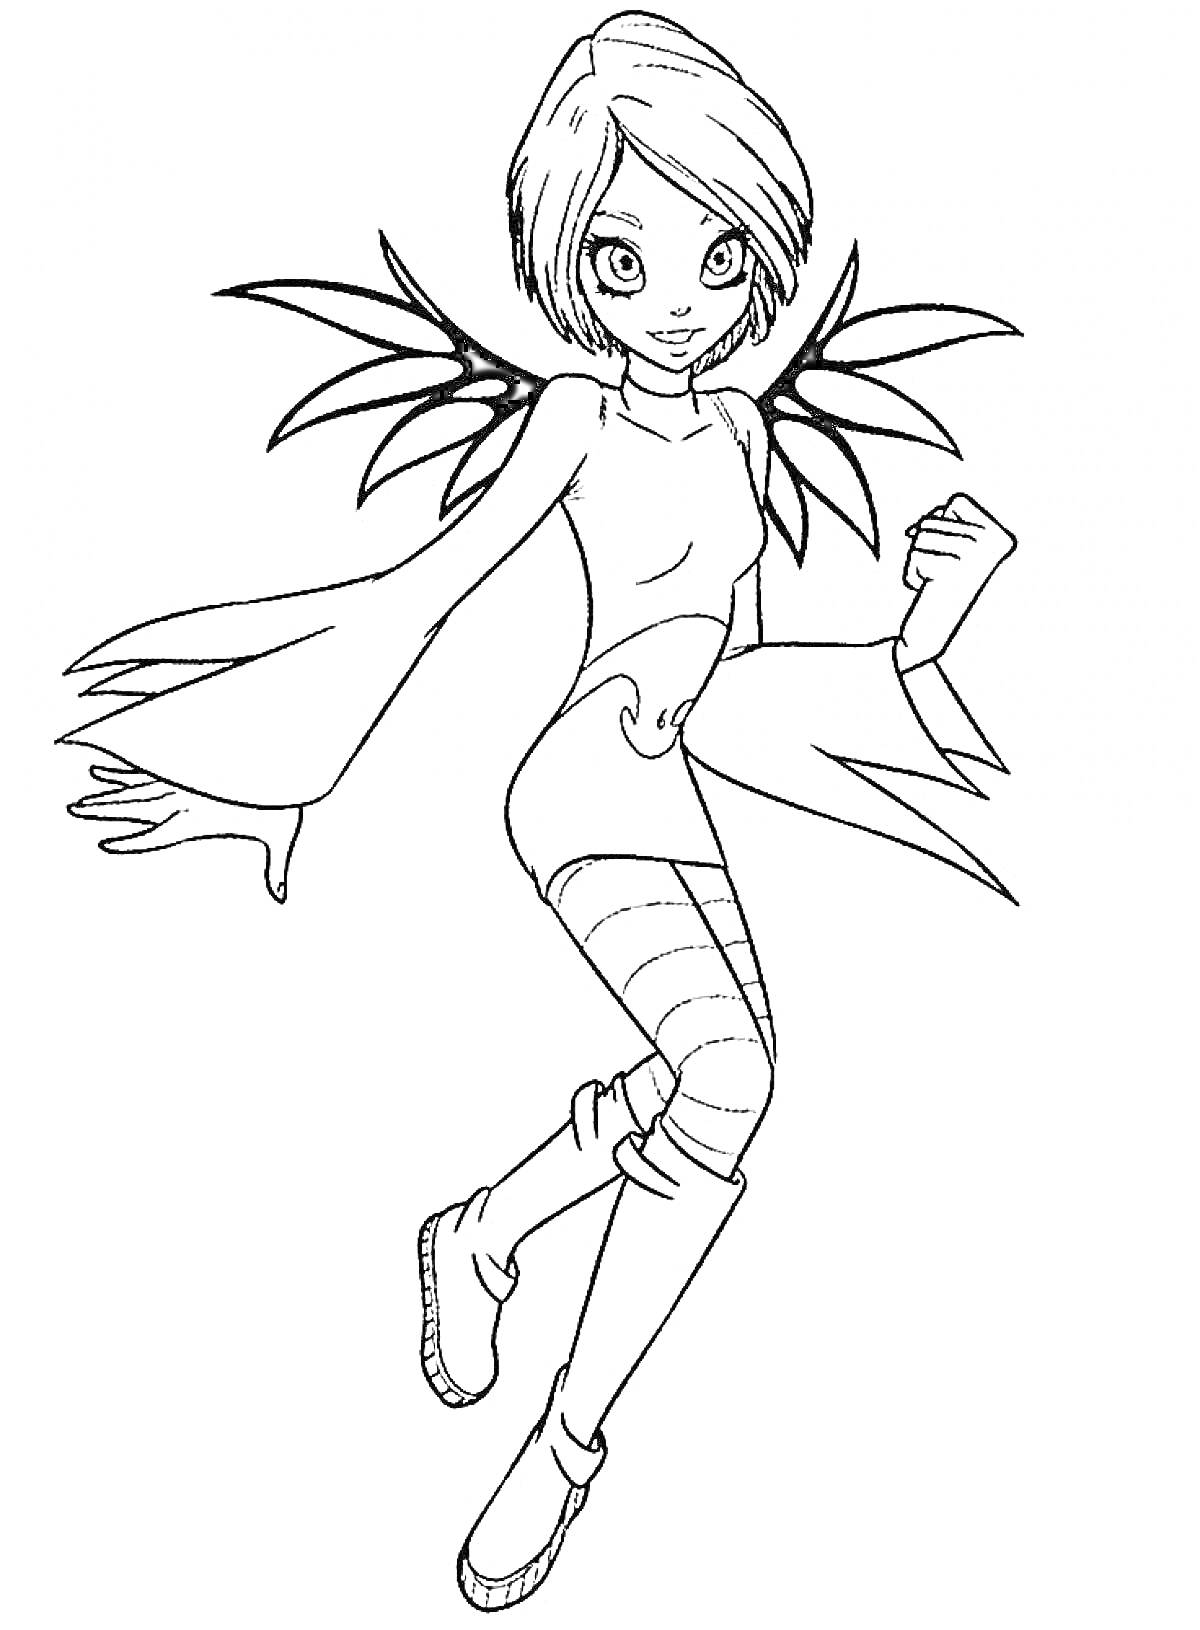 Раскраска Юная чародейка с короткими волосами, крыльями и в высоких сапогах